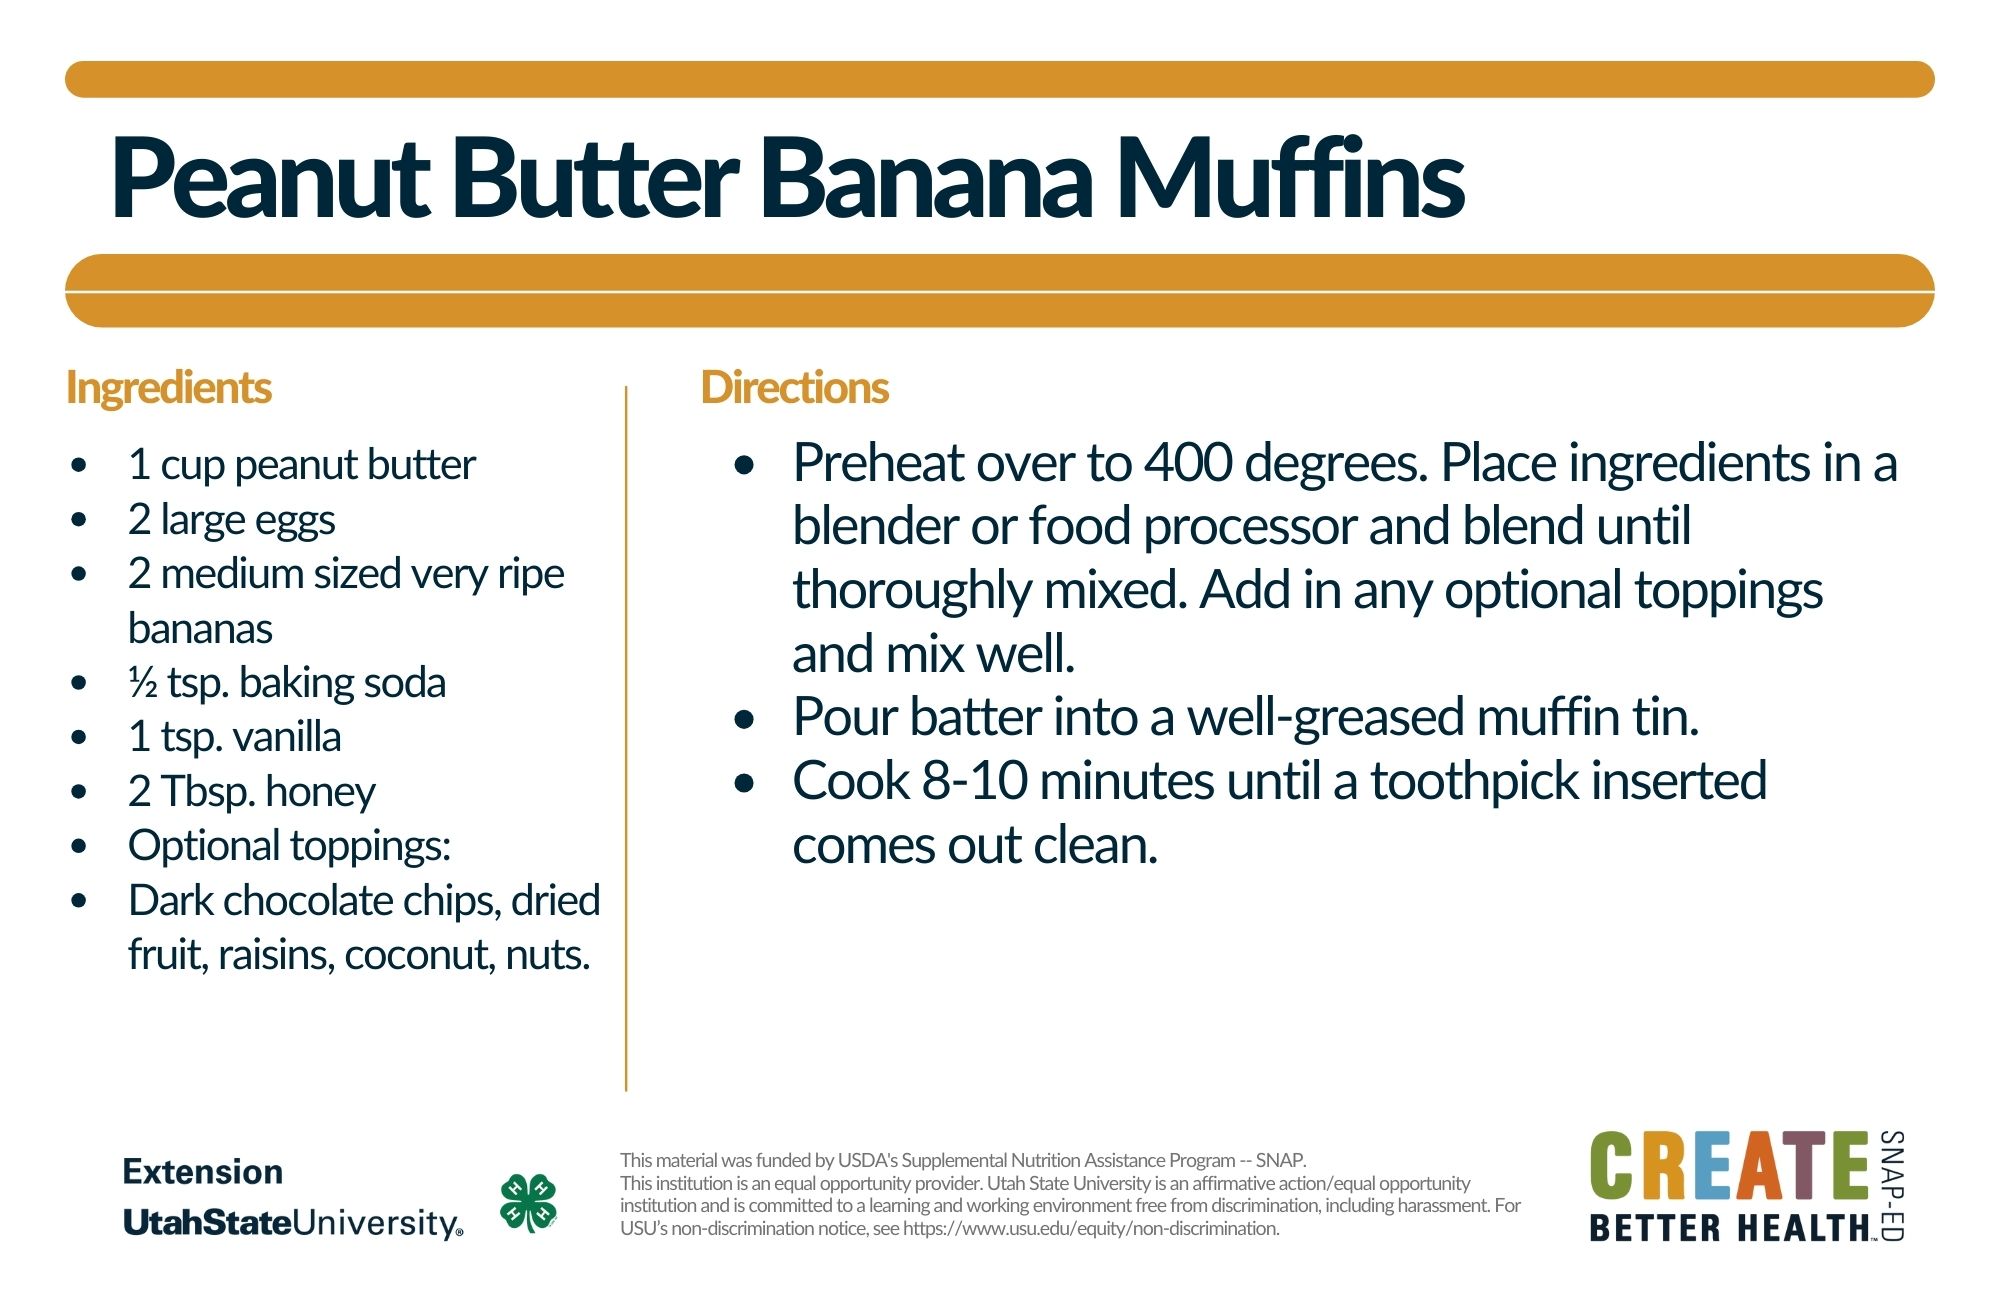 Peanut butter banana muffins